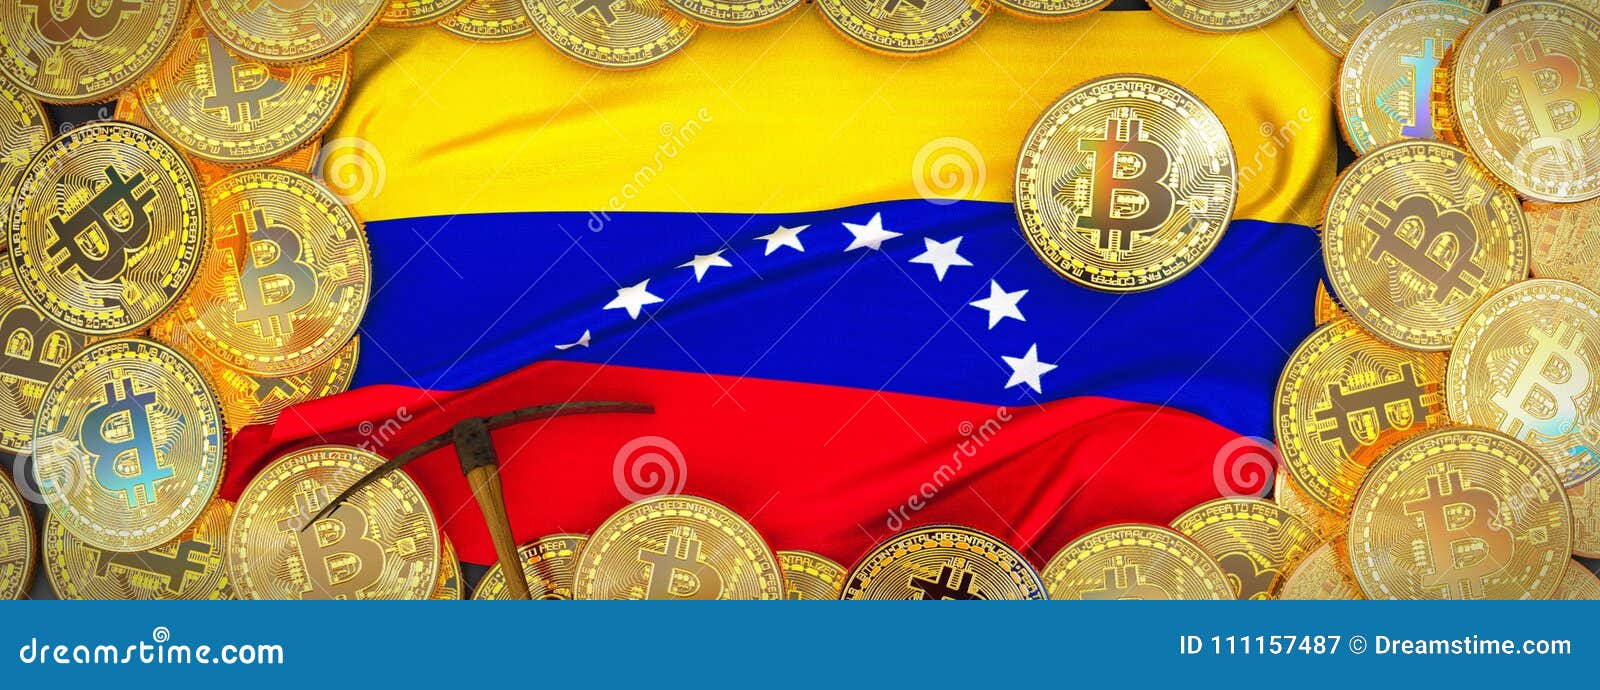 Χρυσός Bitcoins γύρω από τη σημαία της Βενεζουέλας και αξίνα στο αριστερό τρισδιάστατη απεικόνιση